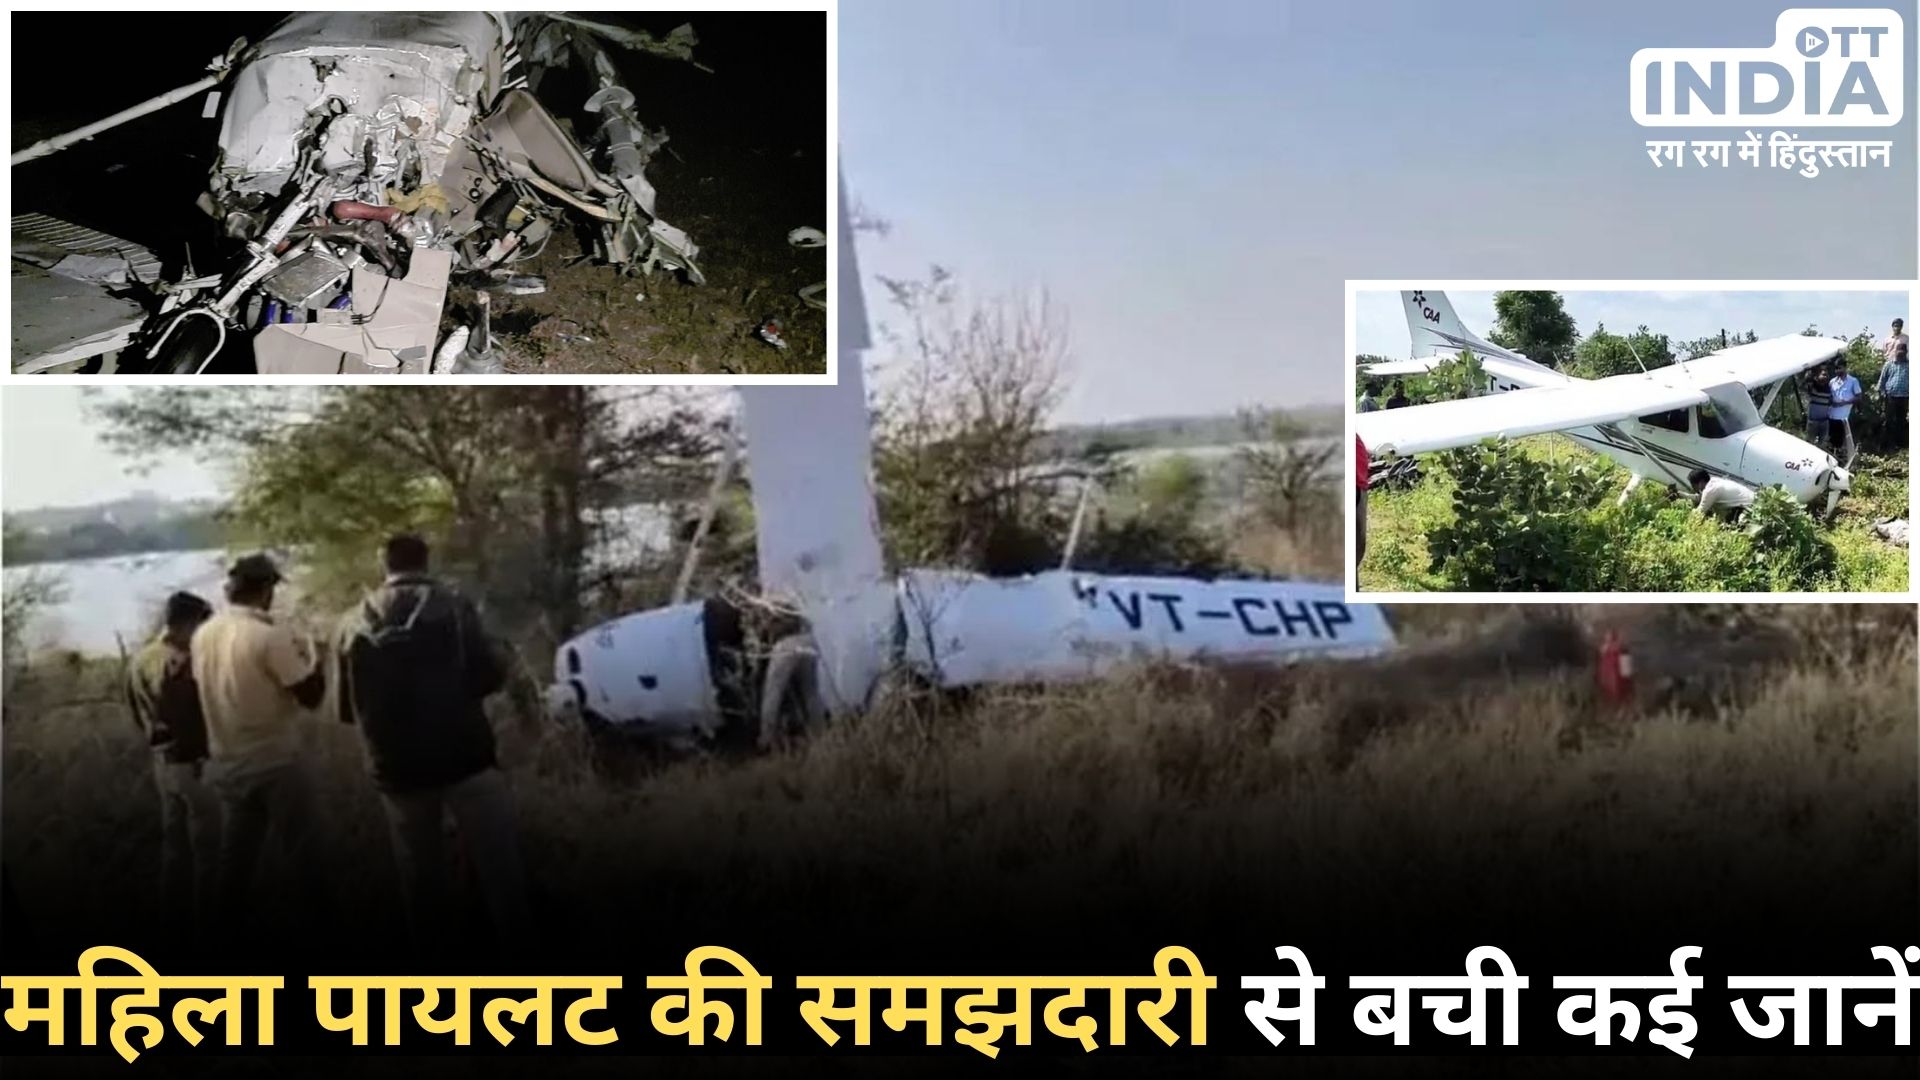 MP TRAINEE AIRCRAFT CRASHED: मध्य प्रदेश में दुर्घटनाग्रस्त हुआ प्रशिक्षु विमान, हुआ ये चौंकाने वाला हादसा